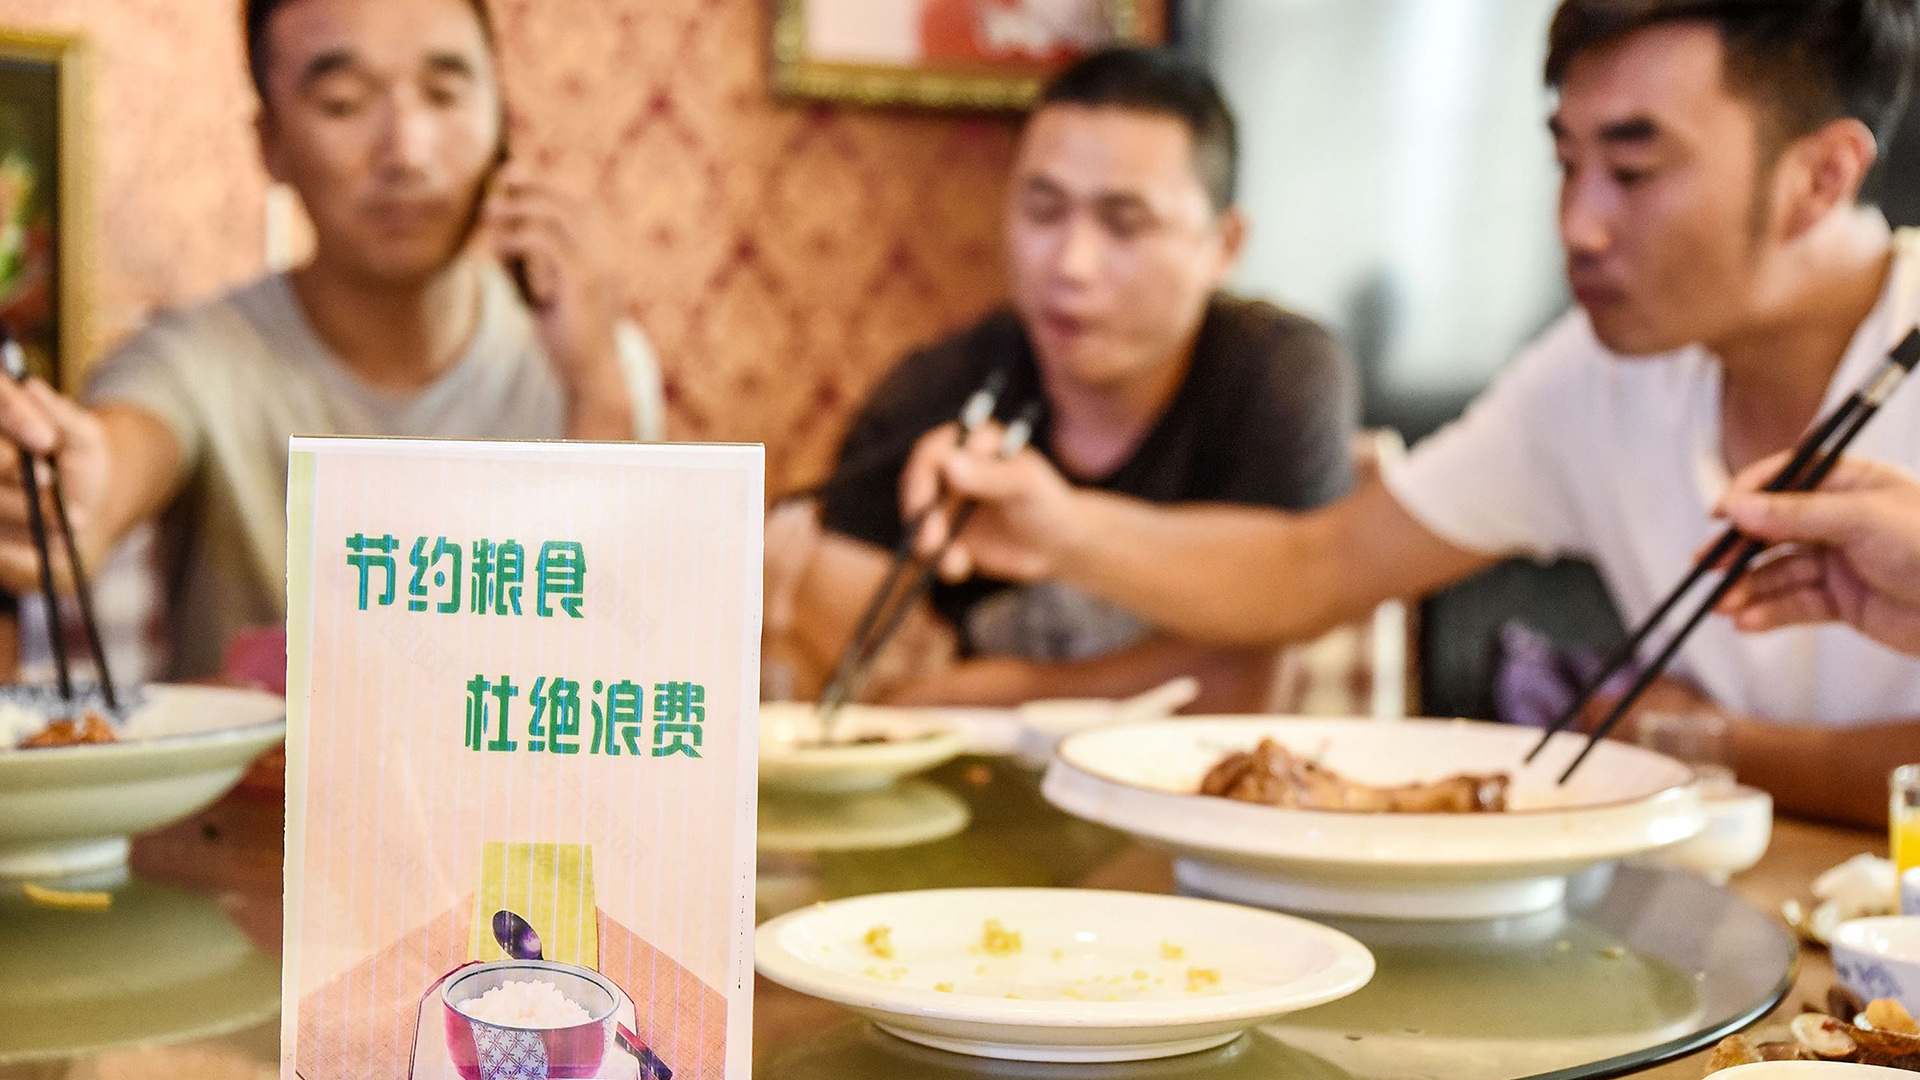 Ein Schild auf einem Tisch in einem Restaurant in China fordert die Gäste auf, Lebensmittel nicht zu verschwenden | AFP